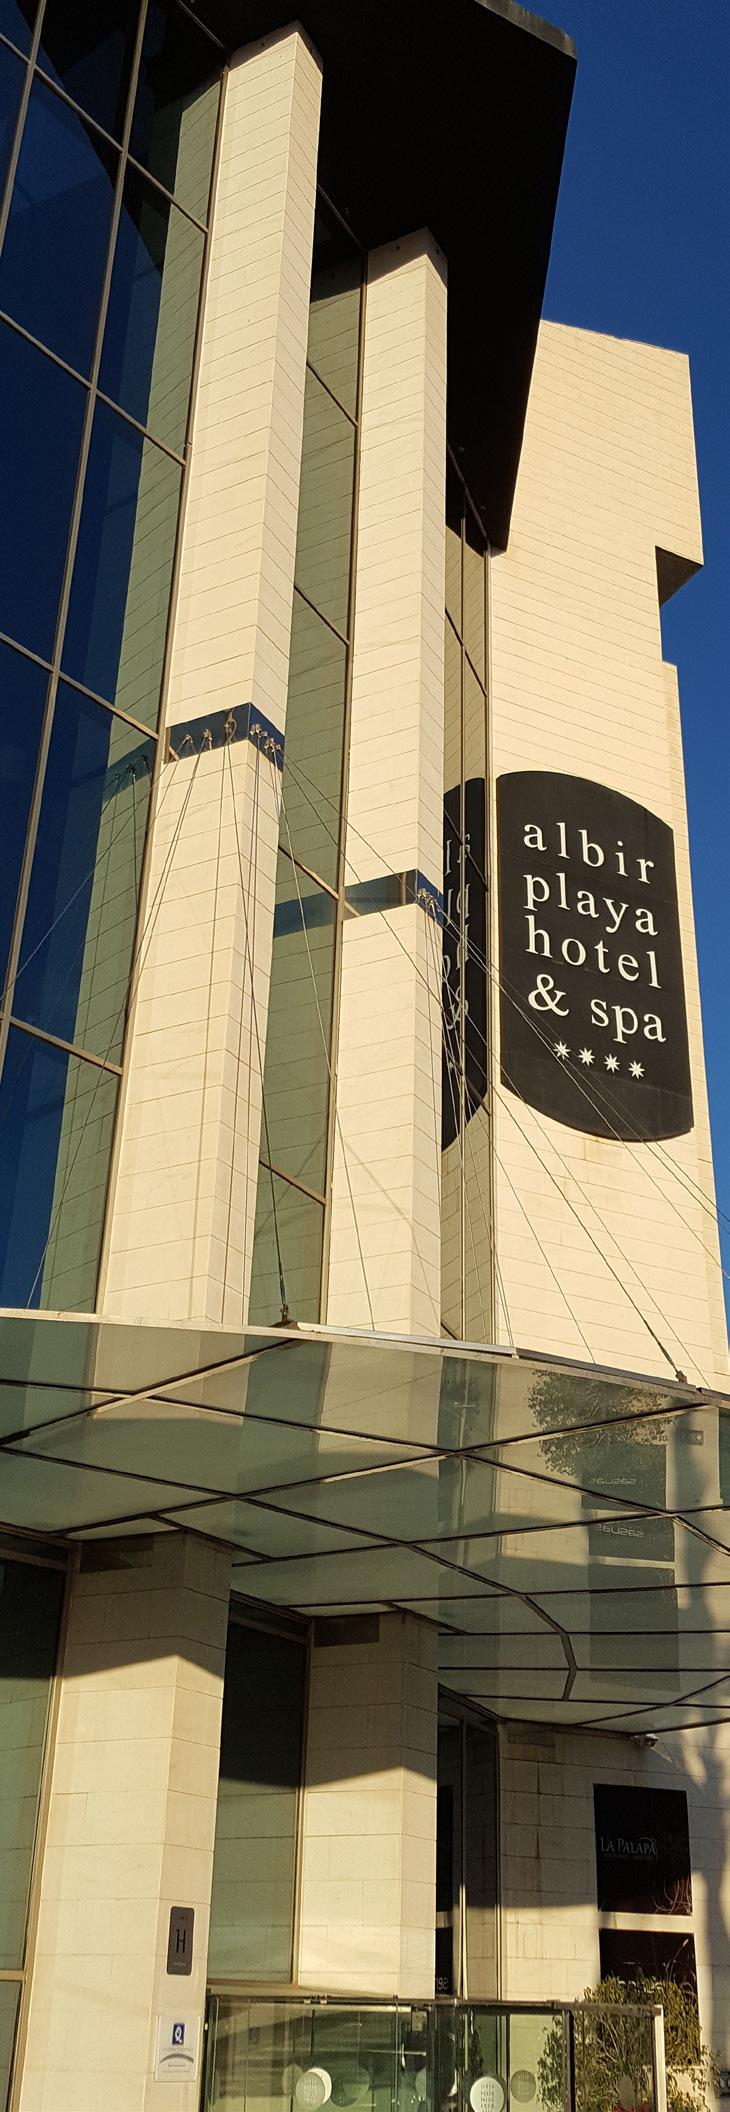 Albir Playa Hotel & Spa 4* Hotel Albir